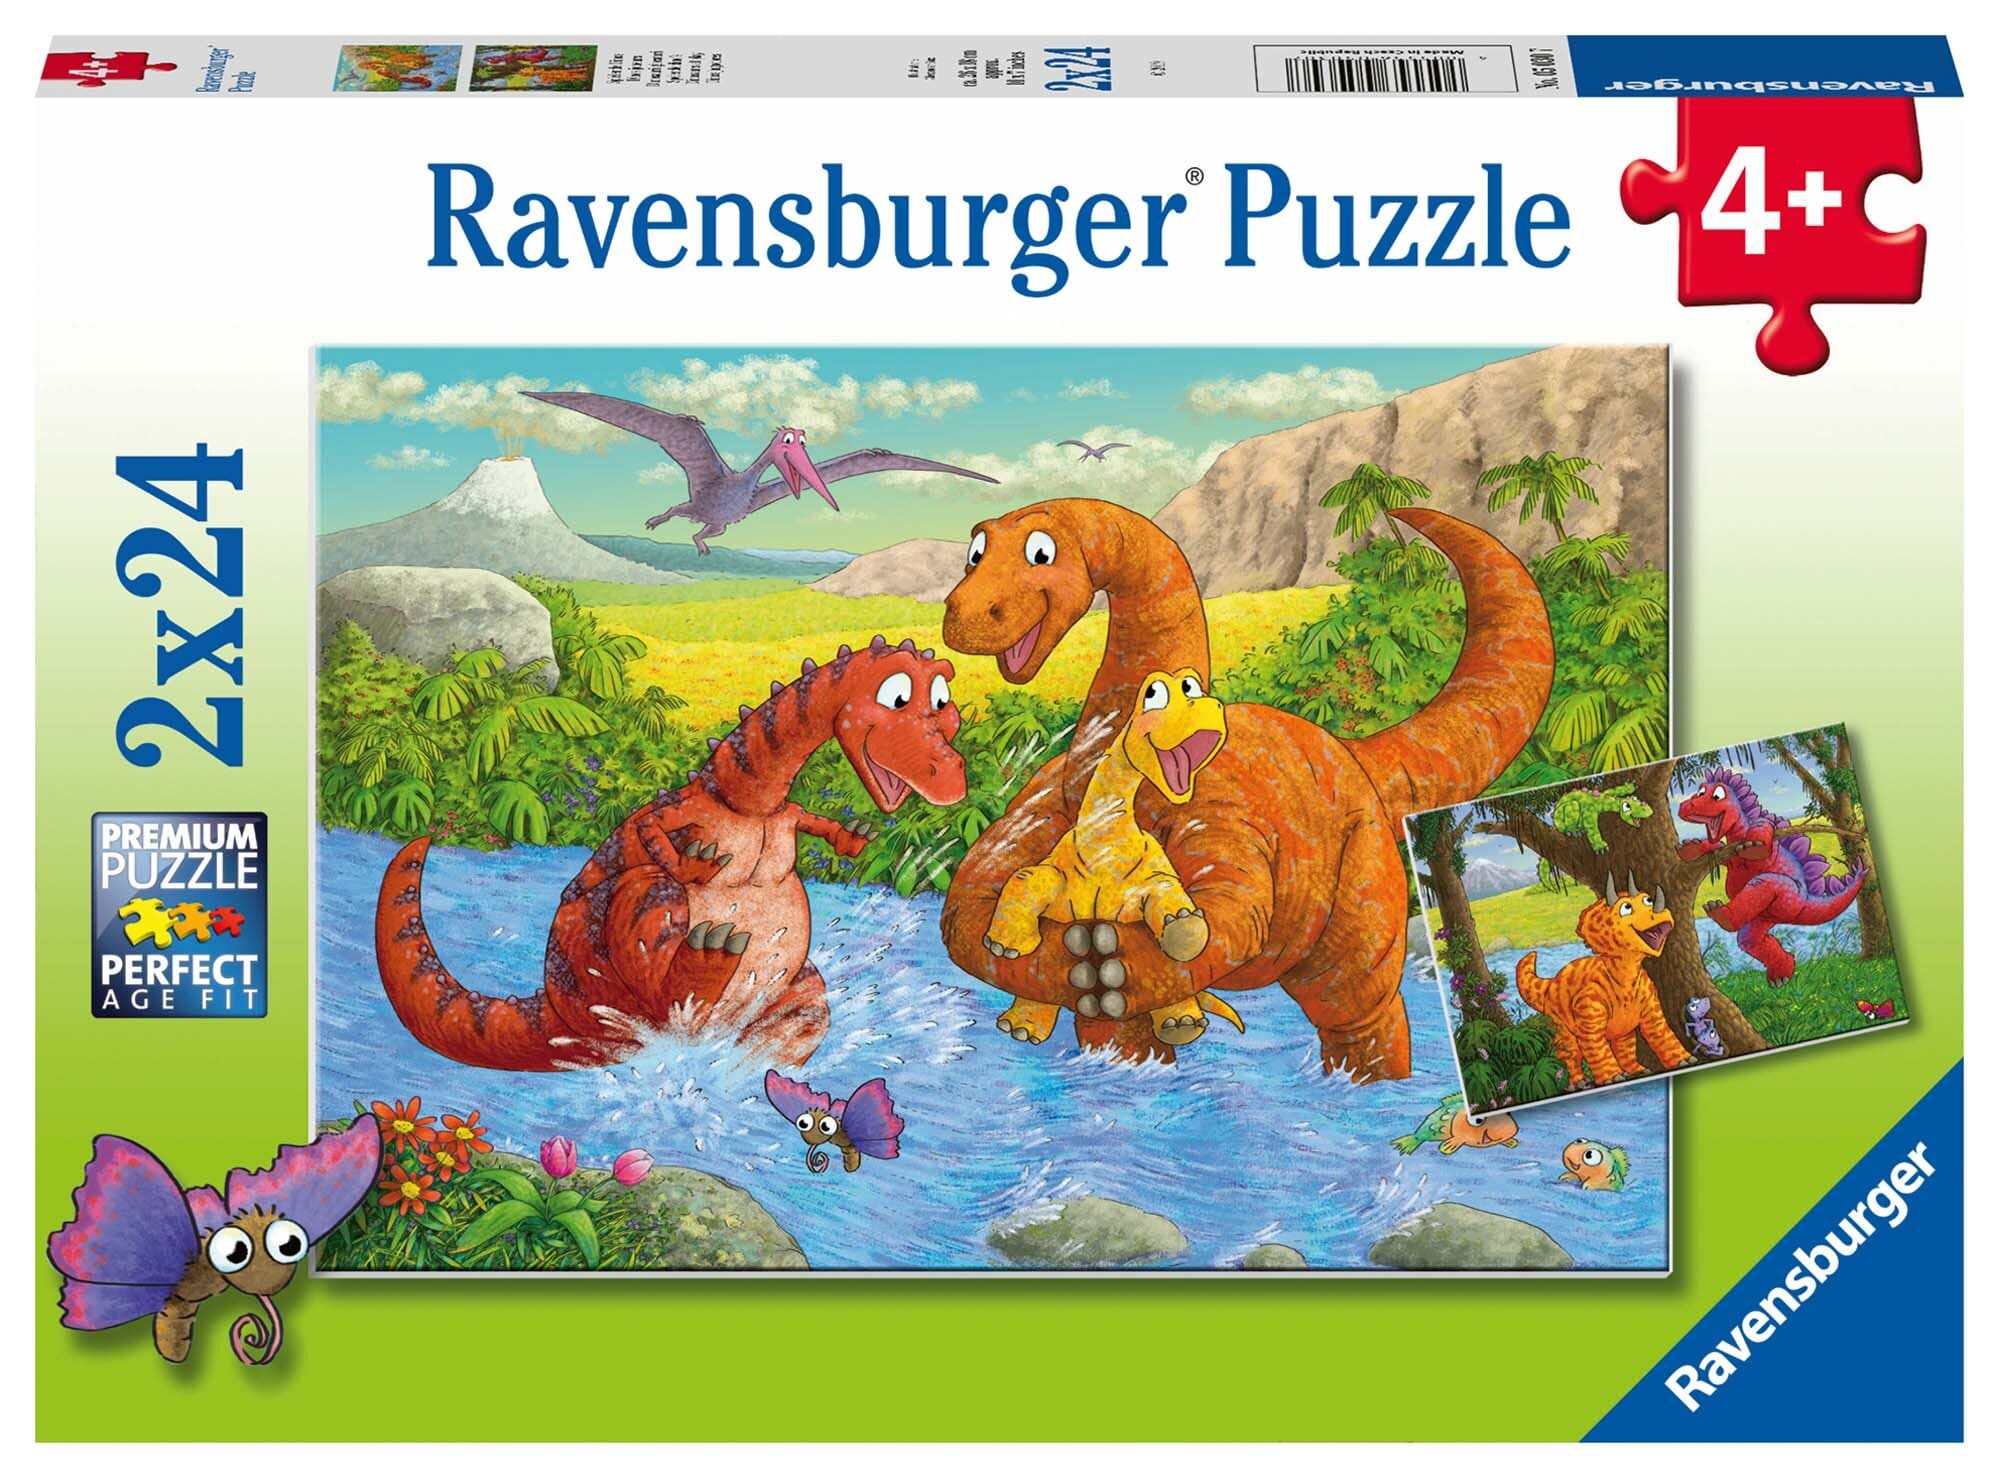 Ravensburger Puslespil, Dinosaurs at Play 2x24 brikker